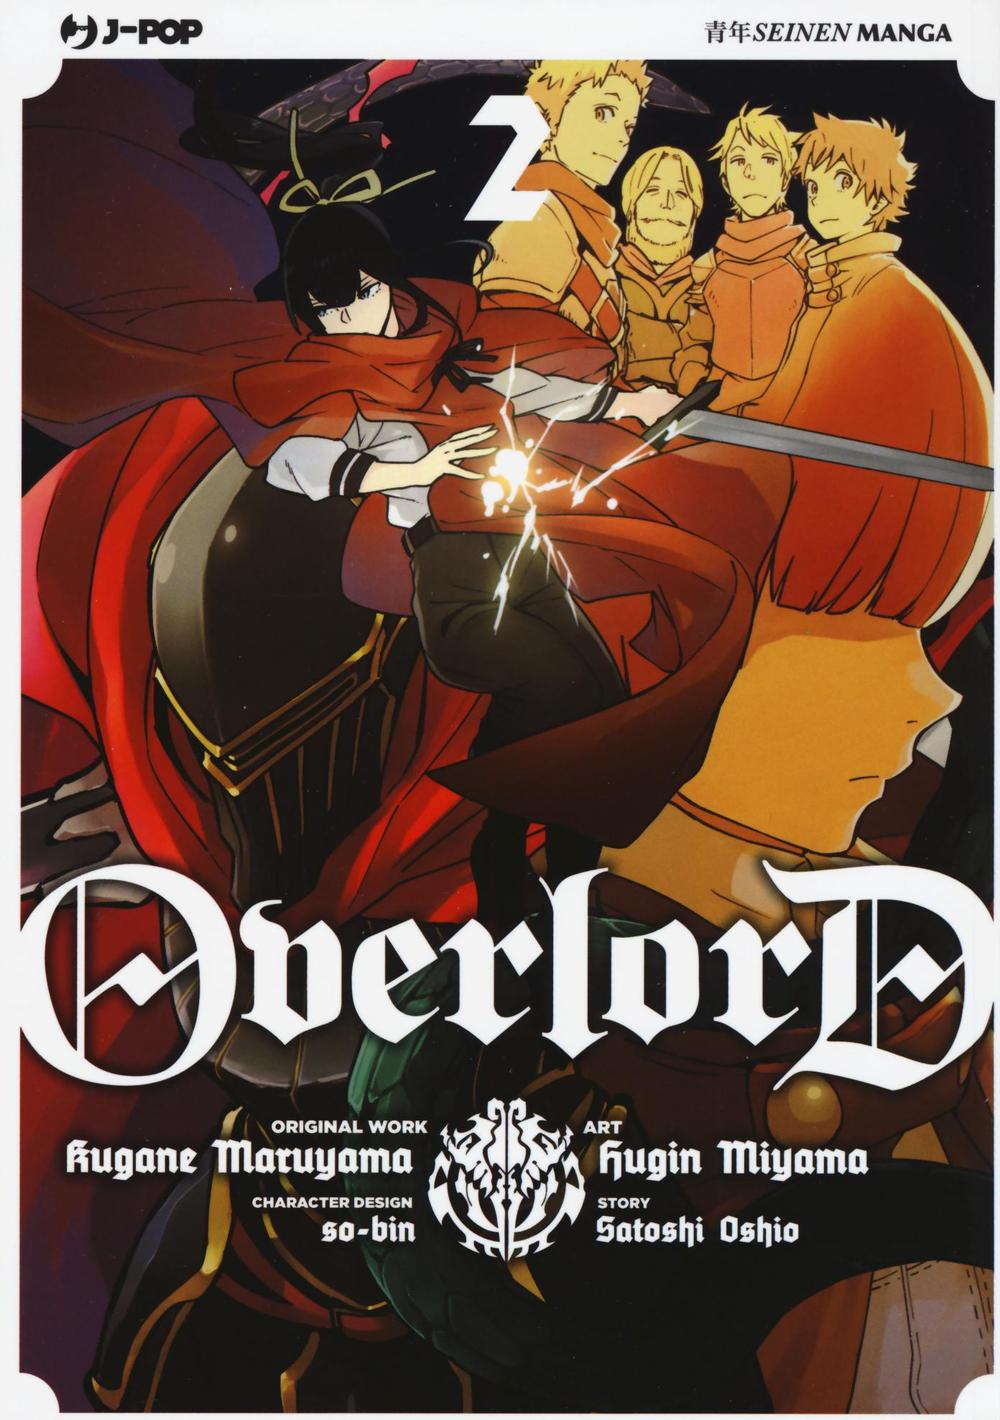 Kniha Overlord Kugane Maruyama